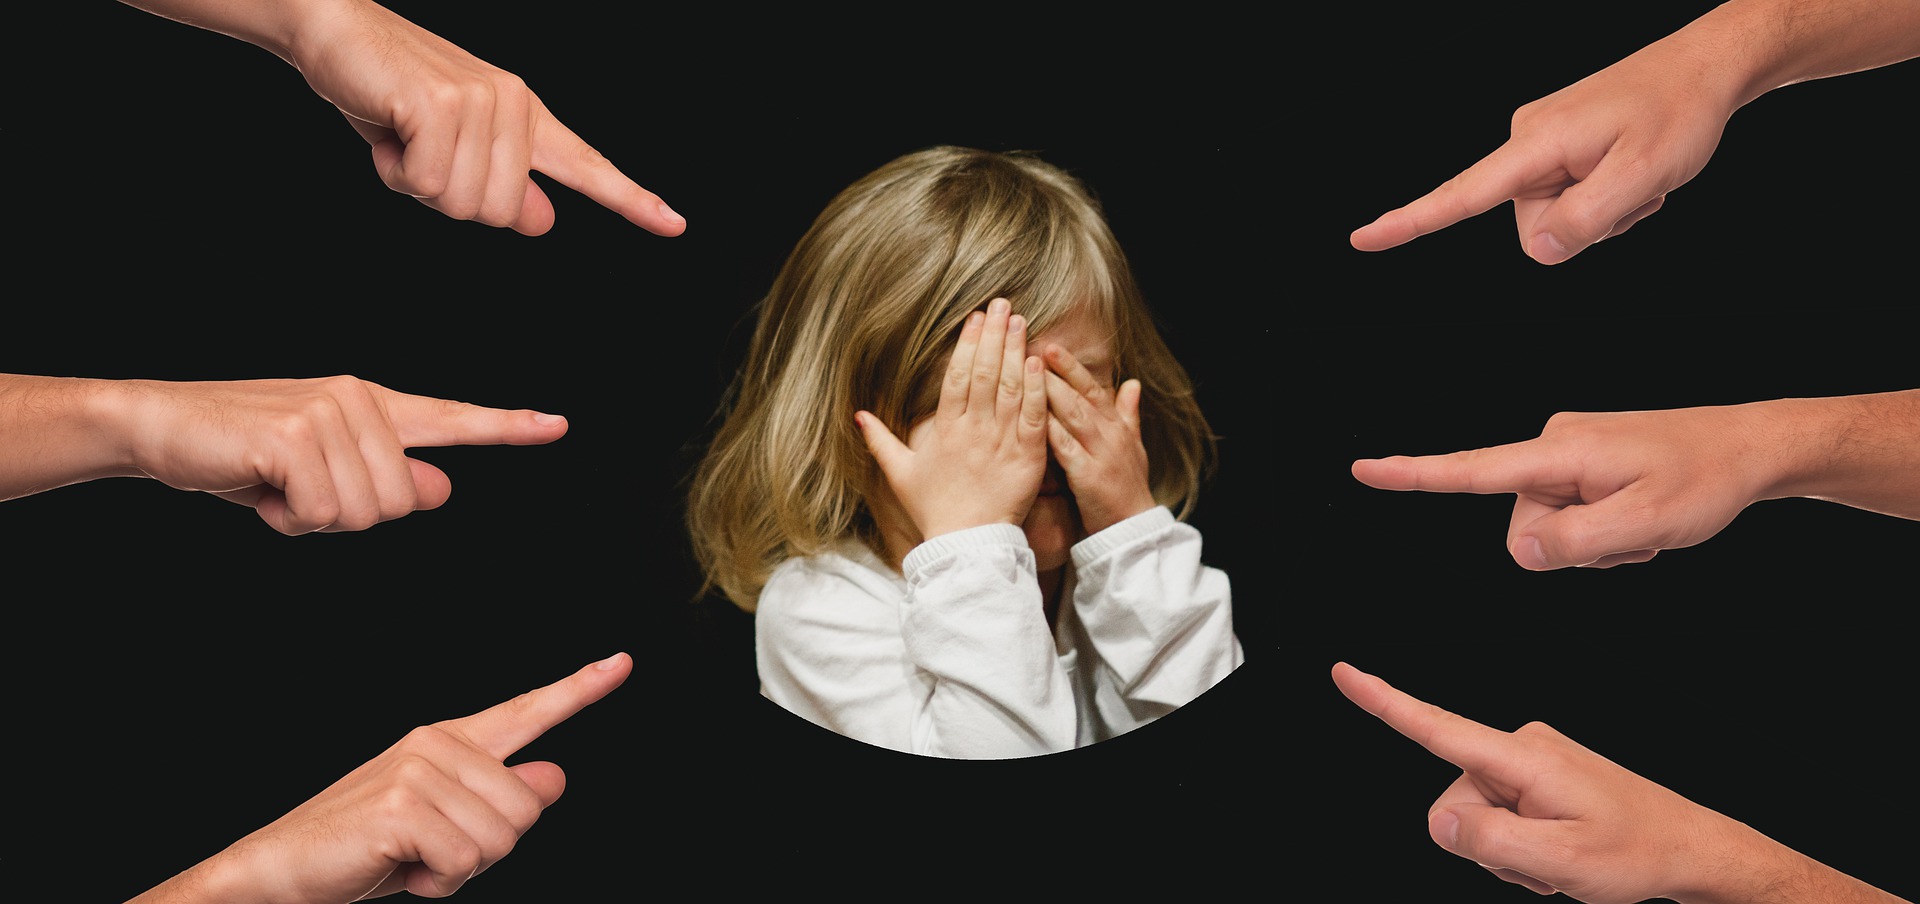 Bullying na escola: sinais, consequências e intervenção – Editora Opet –  Blog Educacional